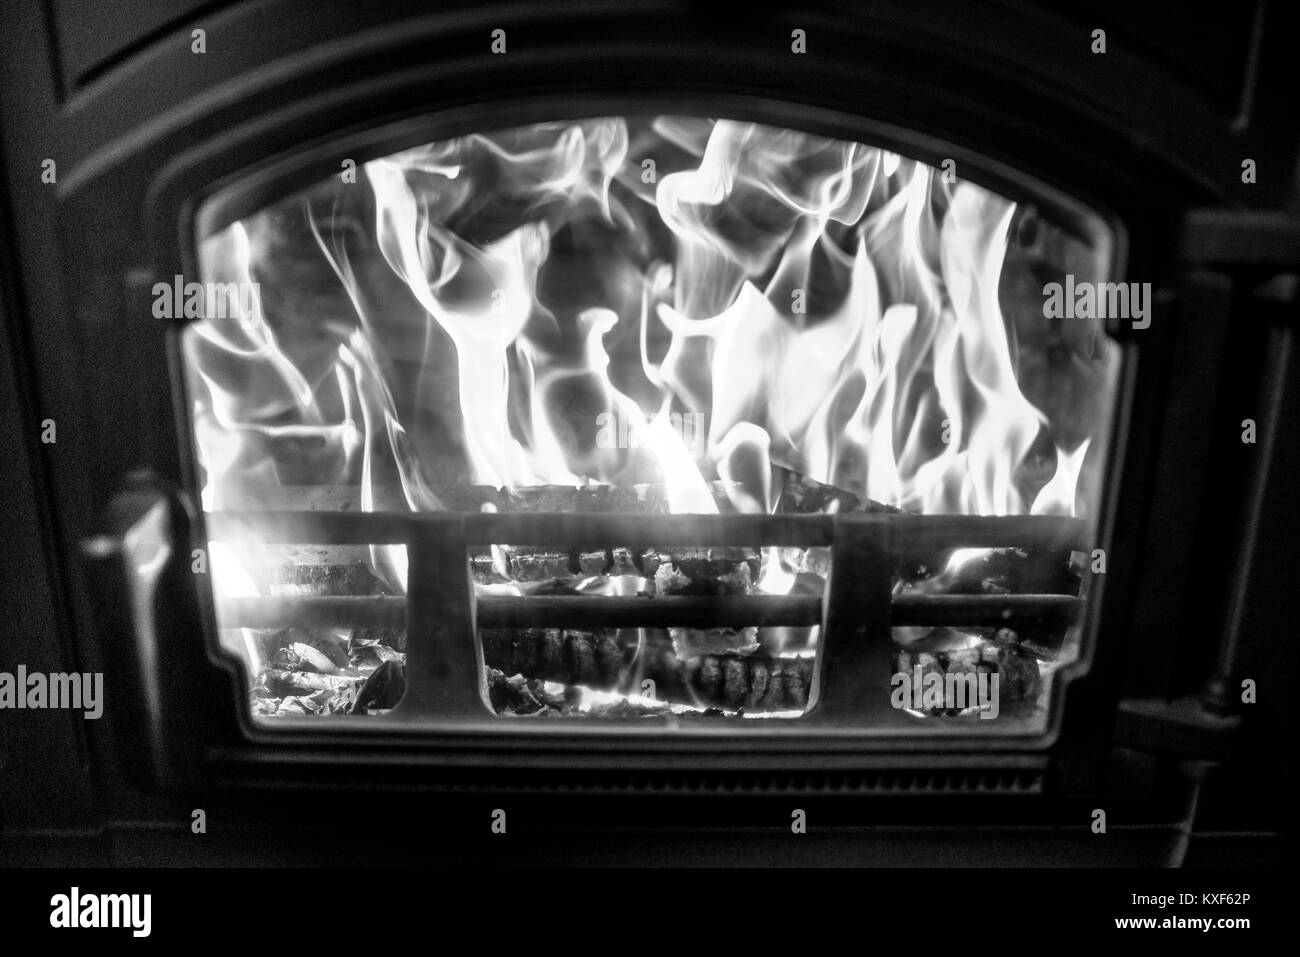 Bois de chauffage en feu vu à travers la fenêtre d'une cuisinière, détails intérieurs campagne Banque D'Images